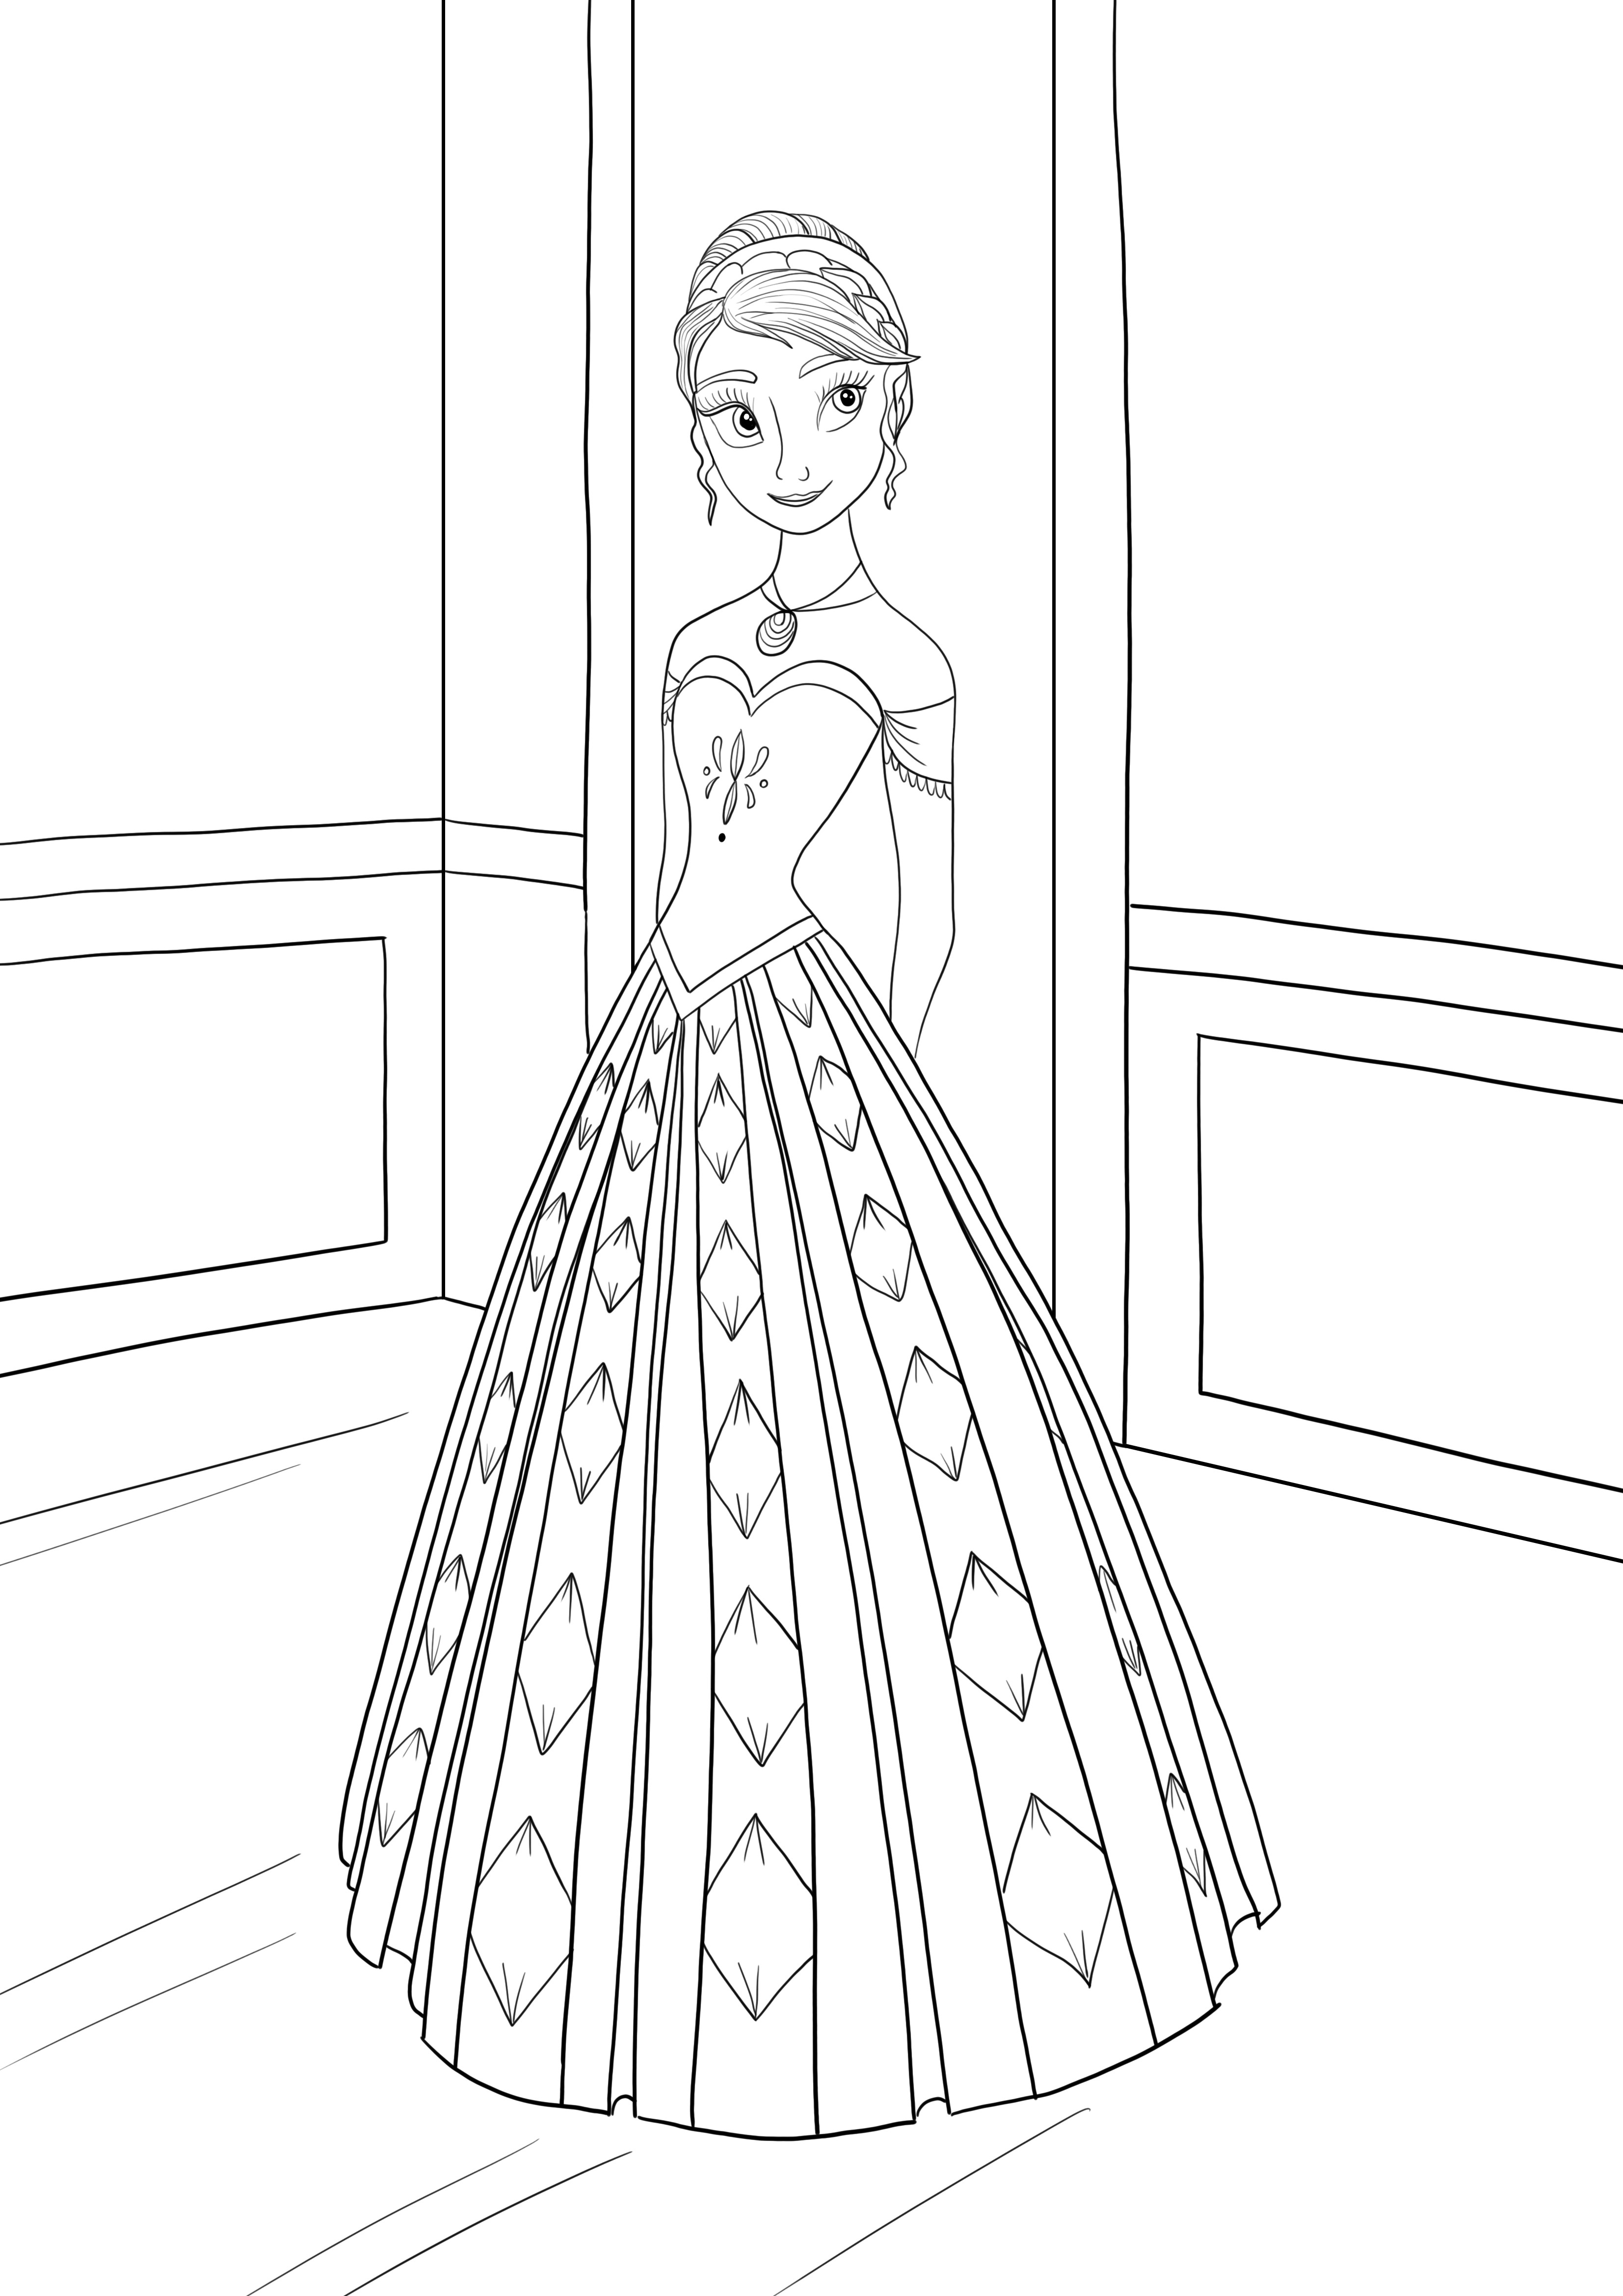 La principessa Anna di Frozen stampa e colora gratuitamente i cartoni animati